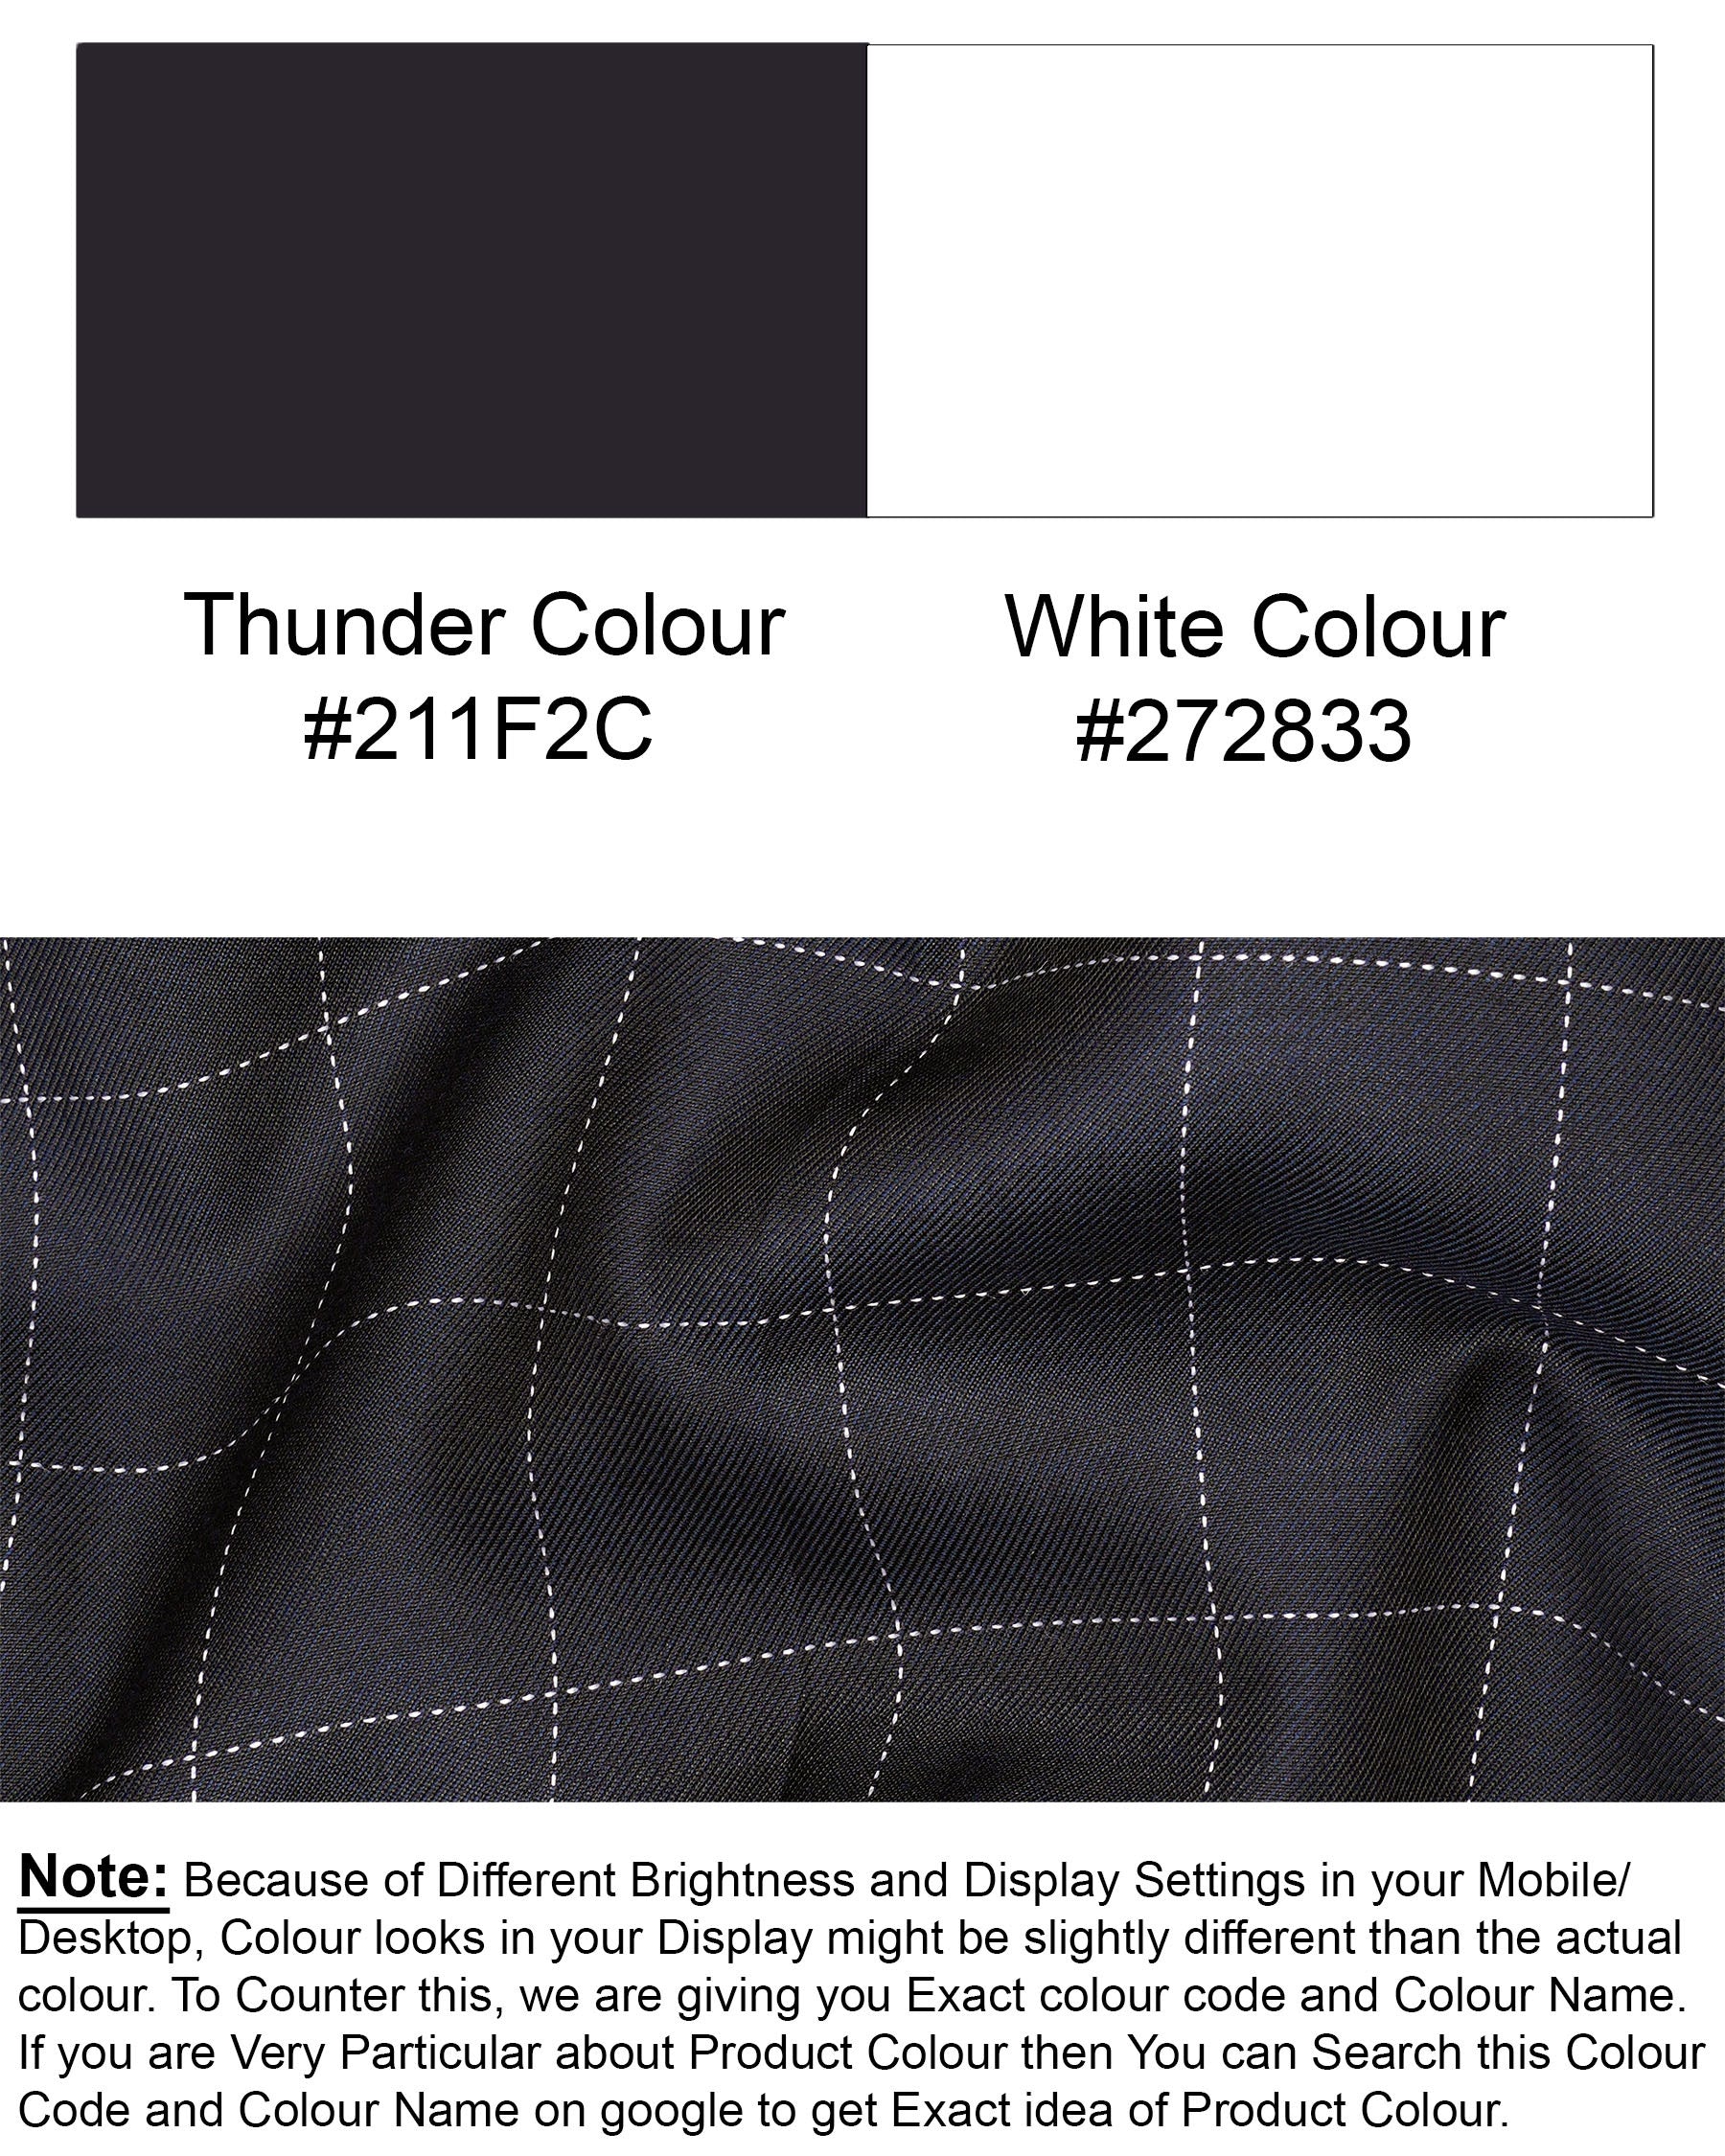 Thunder Blue Solid Waistcoat V1896-36, V1896-38, V1896-40, V1896-42, V1896-44, V1896-46, V1896-48, V1896-50, V1896-52, V1896-54, V1896-56, V1896-58, V1896-60